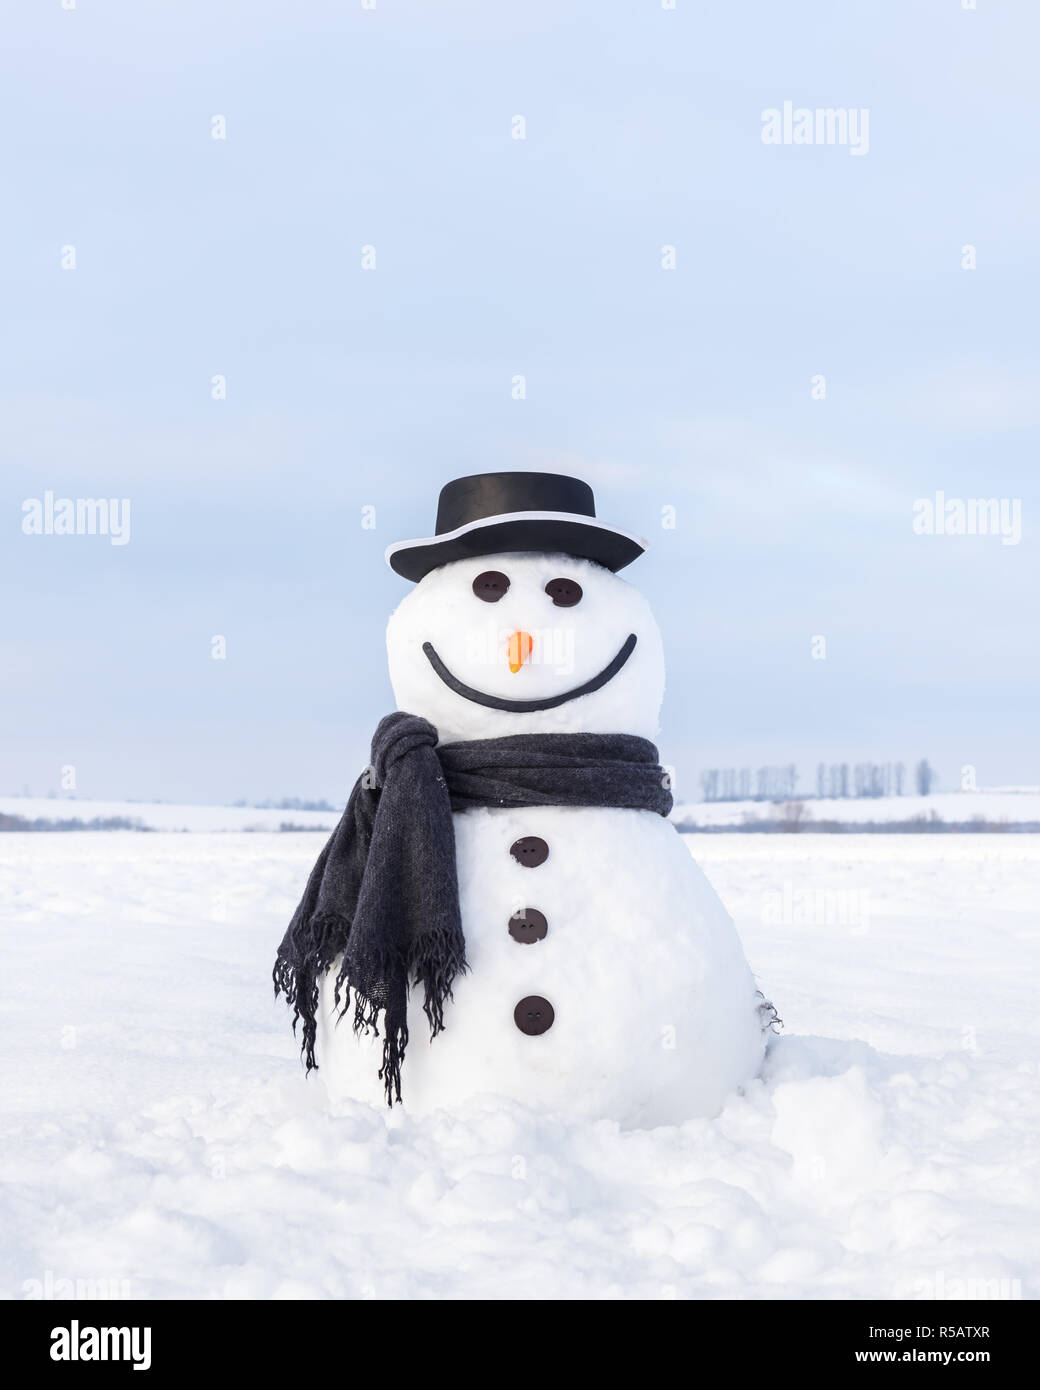 Lustige Schneemann in stylischen Hut und schwarzen scalf auf schneebedeckten Feld. Frohe Weihnachten und ein glückliches Neues Jahr! Stockfoto